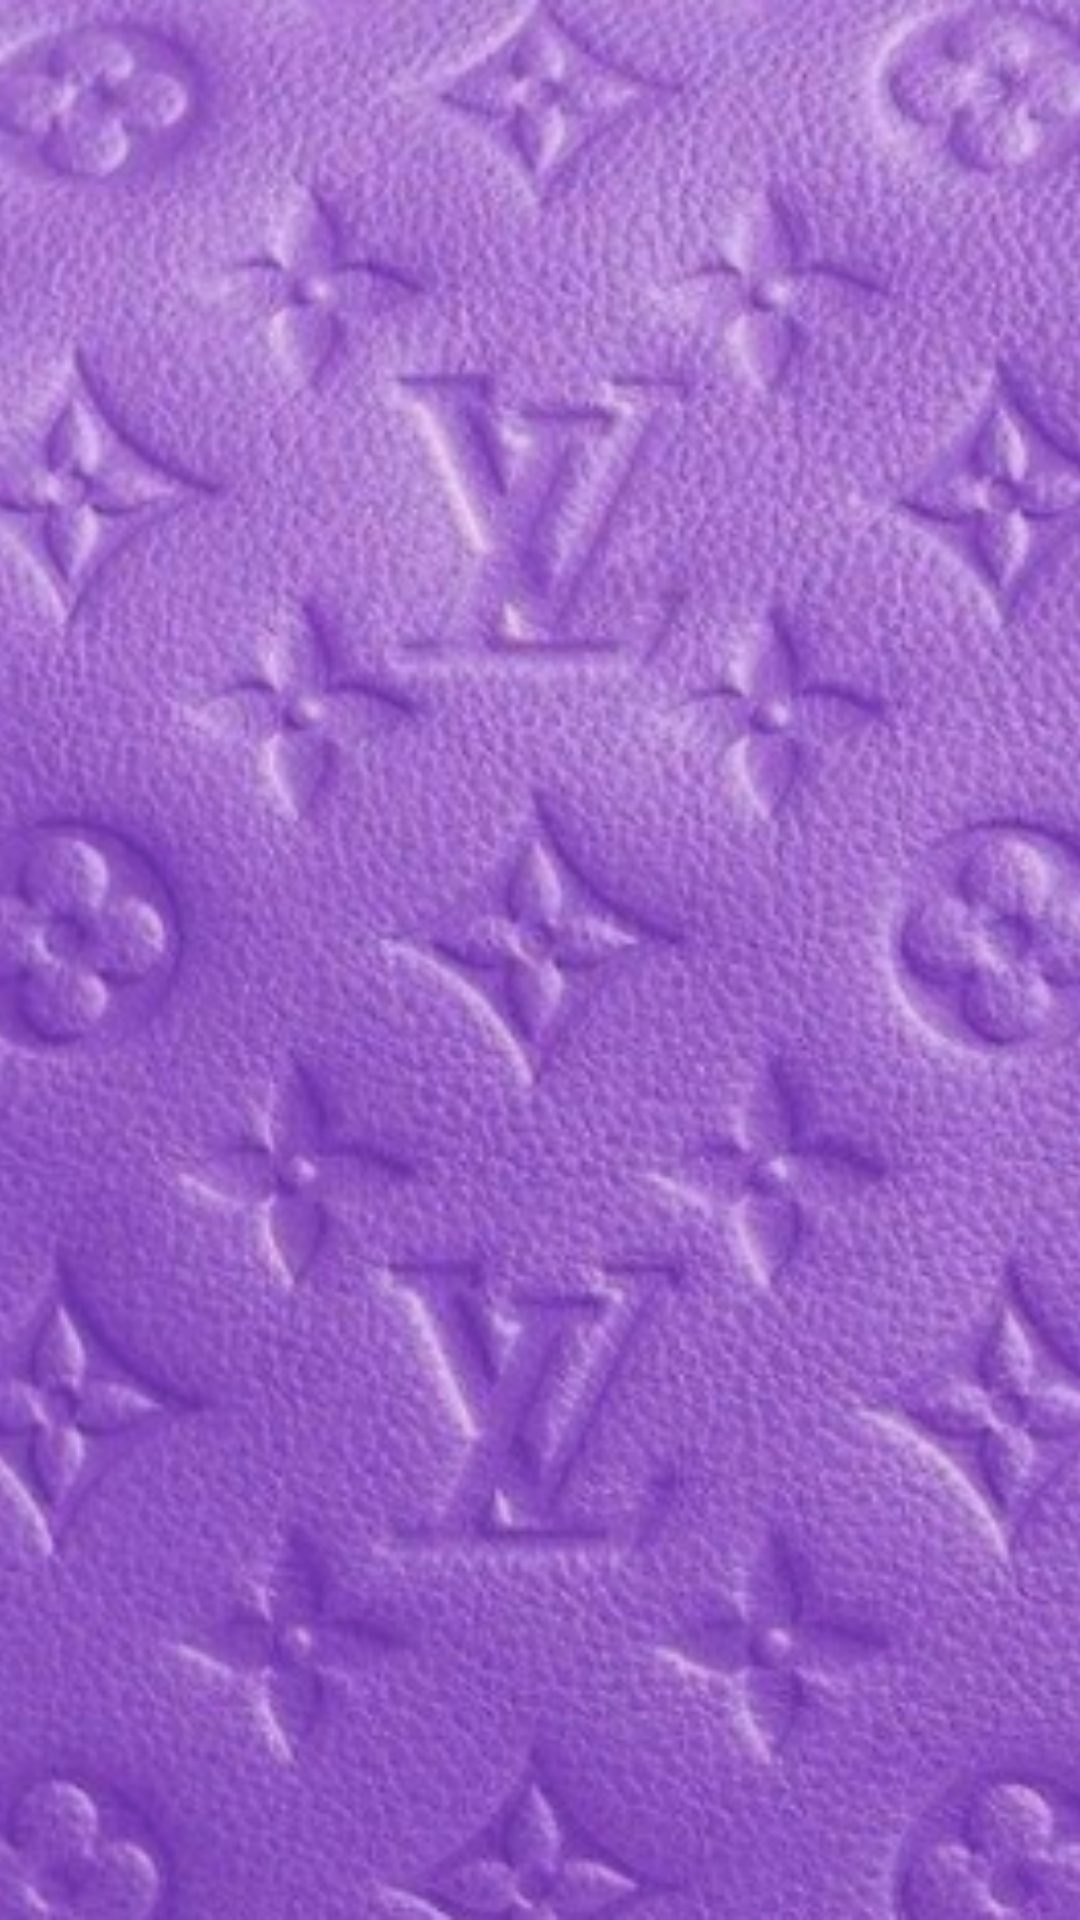 Bạn muốn tạo dấu ấn riêng biệt cho màn hình điện thoại của mình? Baddie background purple là điểm đến lí tưởng cho sự khác biệt và phong cách nổi bật, đồng thời giúp bạn trở thành tâm điểm của mọi ánh nhìn.